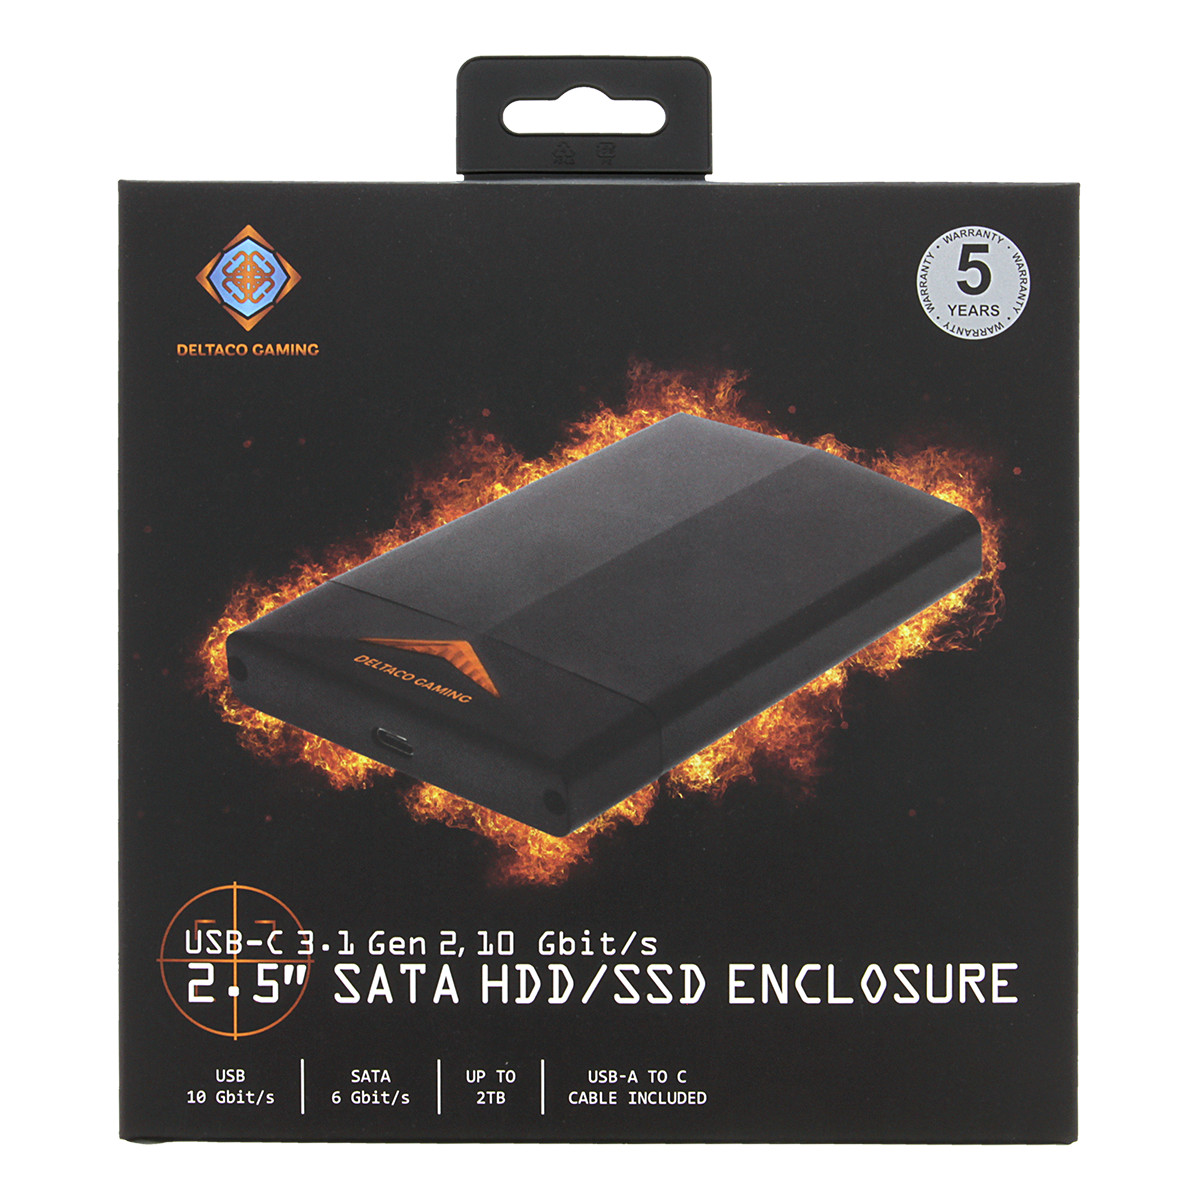 DELTACO GAMING 2.5" SATA HDD enclosure, aluminum, LED, USBC, USB 3.0